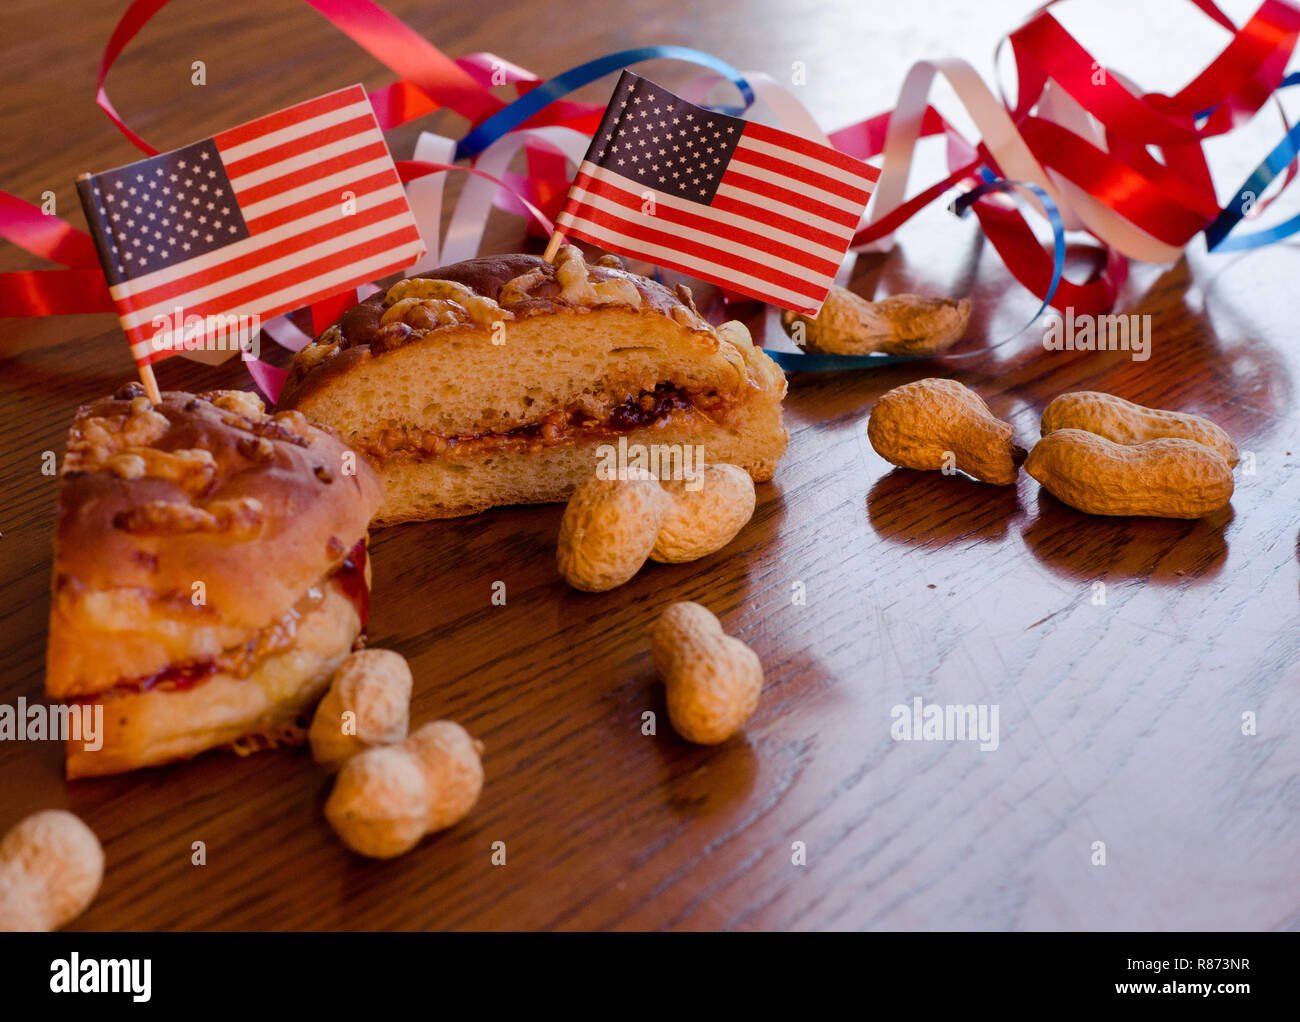 Burro di arachidi e jelly sandwich con bandierine americane imperniata ad essa e tutta le arachidi sparsi sul tavolo con rosso, bianco e blu in bande backgrou Foto Stock